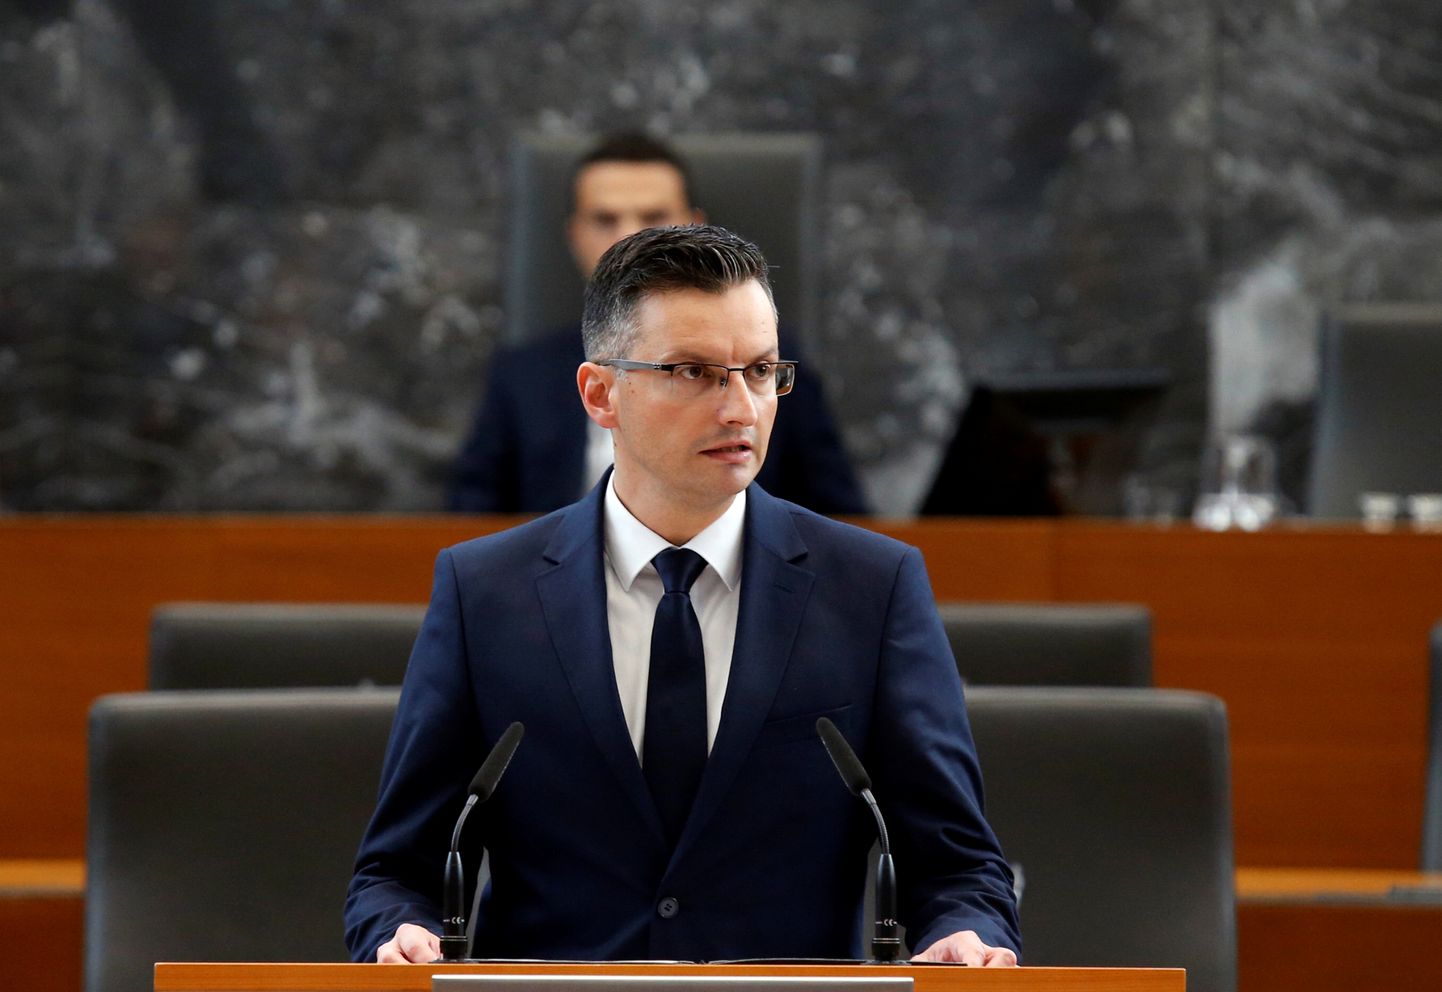 Marjan Šarec kõnelemas täna Sloveenia parlamendi ees pärast riigi peaministriks saamist.